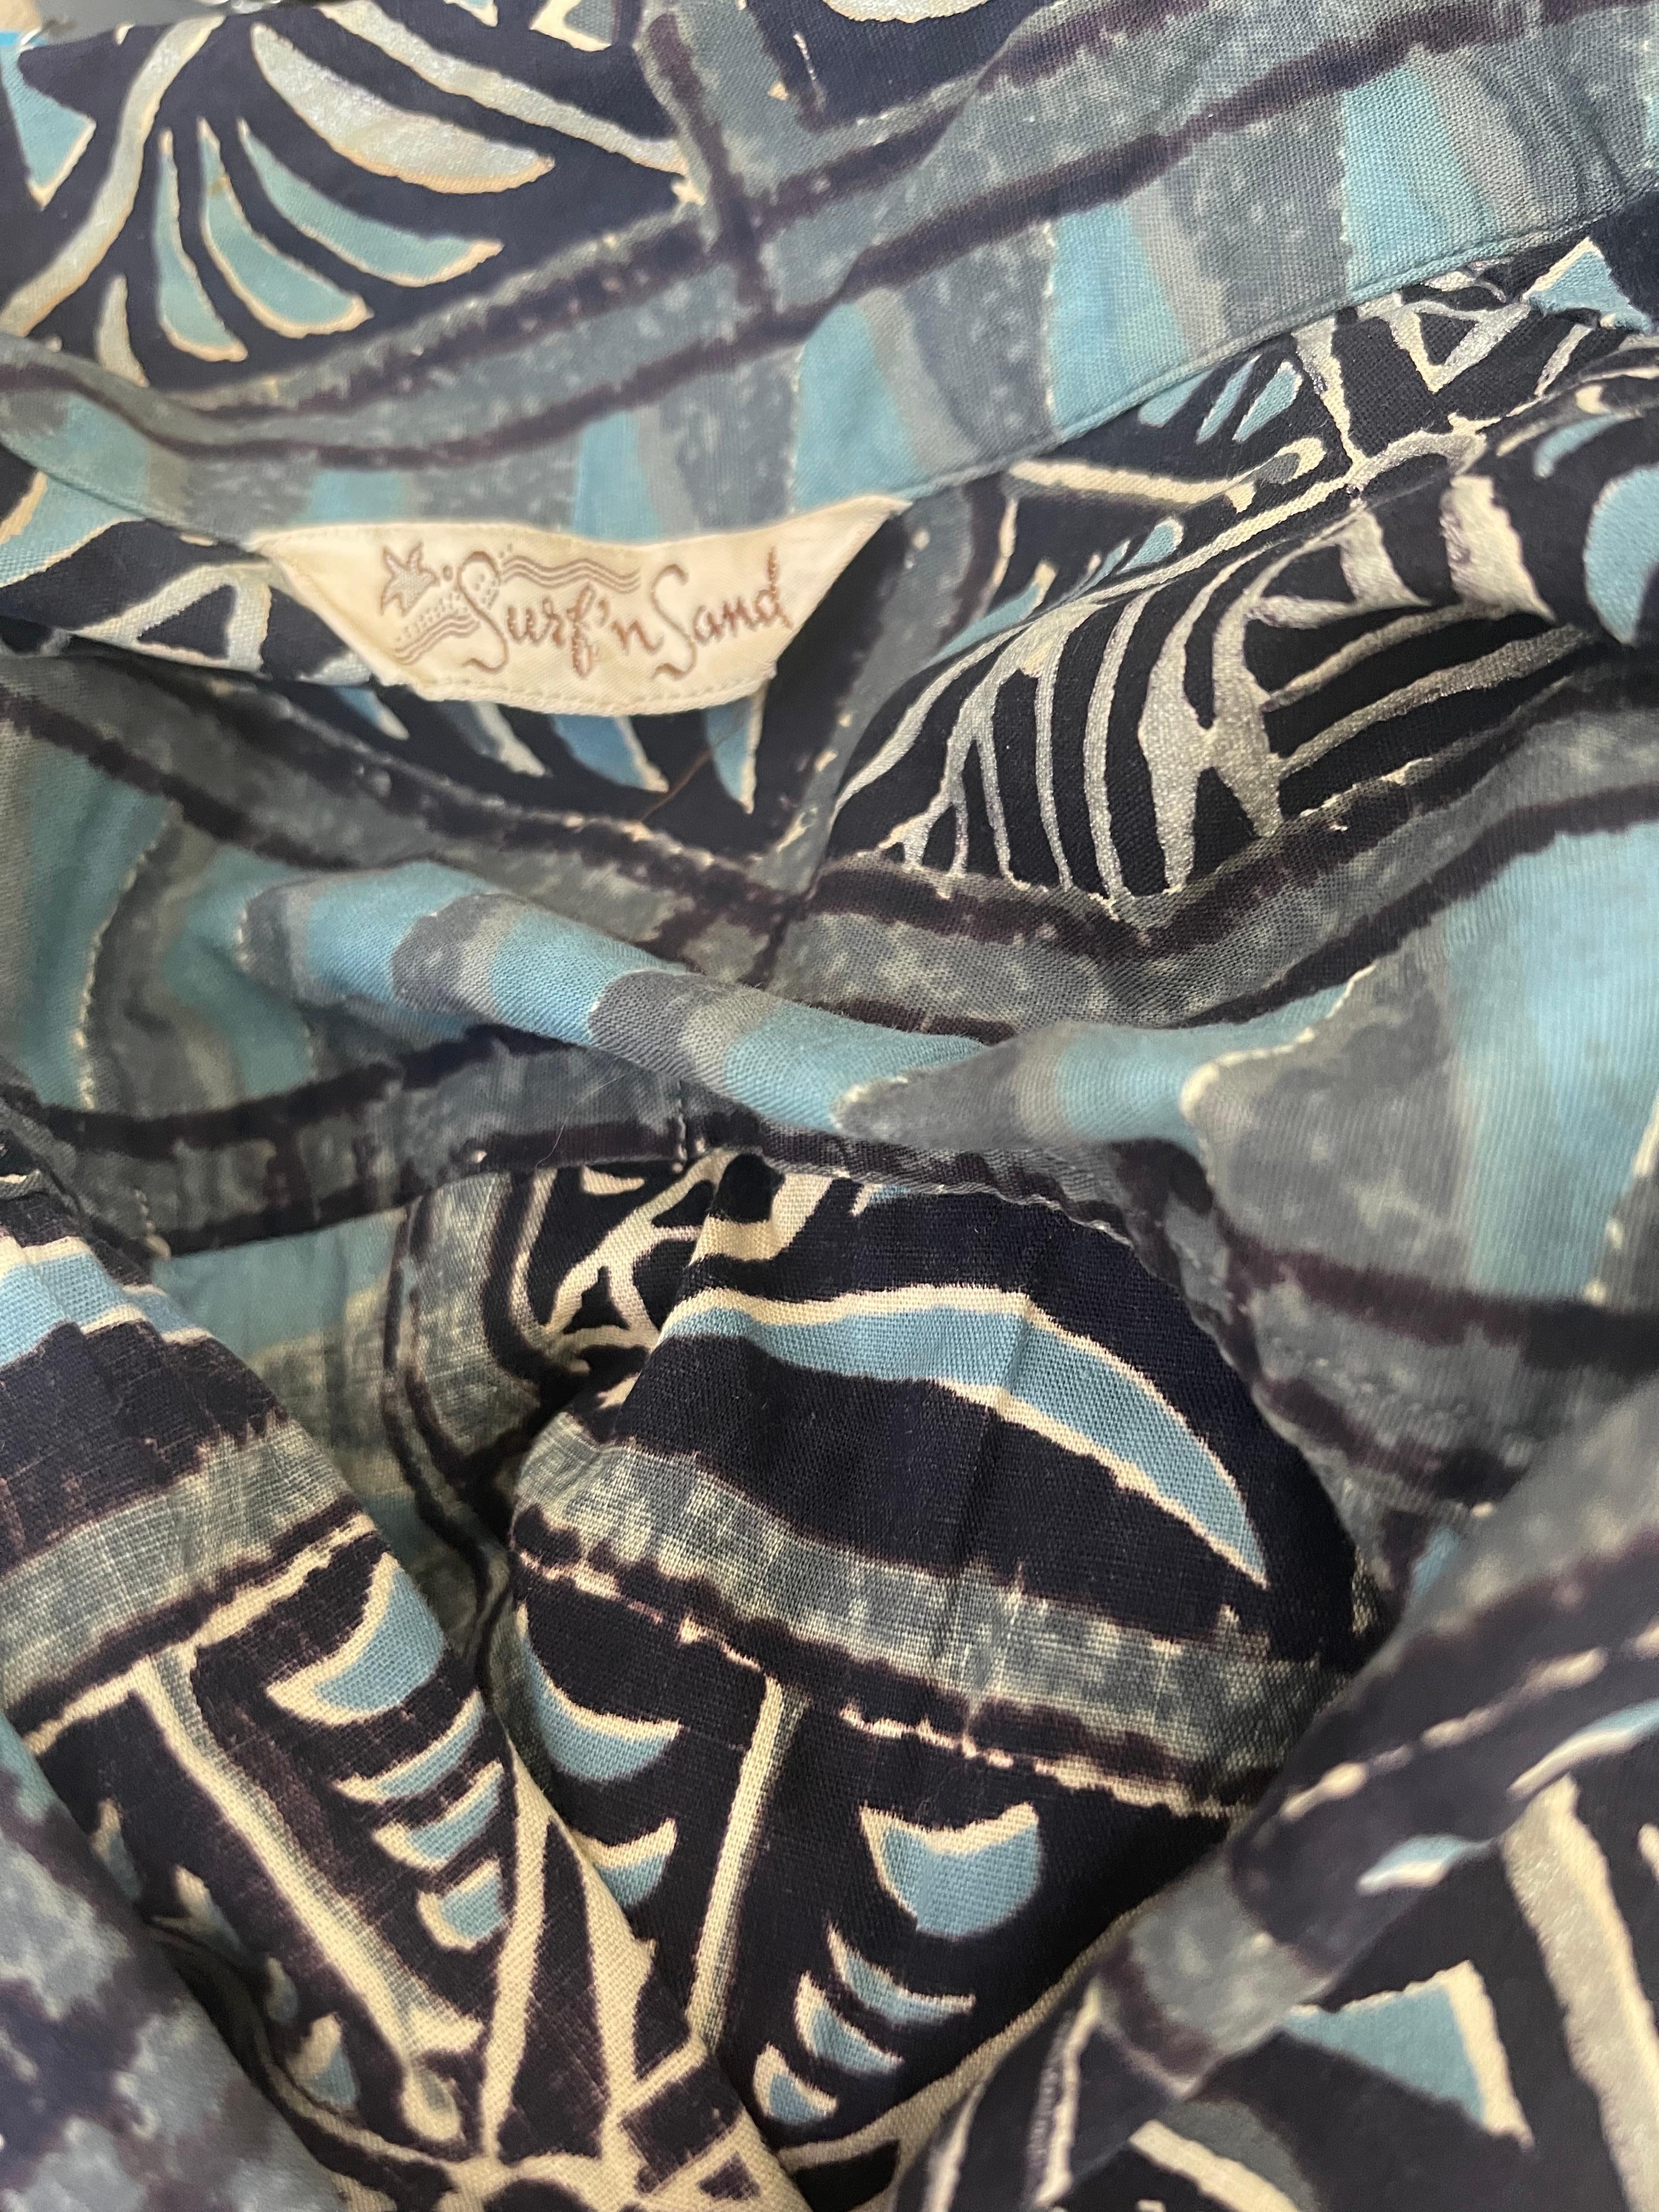 Schickes und super seltenes ALFRED SHAHEEN Surf n' Sand Kleid aus handbedruckter Baumwolle aus den 1950er Jahren! Mit Aloha-Hawaii-Drucken in wunderschönen Blautönen. POCKETS an jeder Seite der Hüfte. Vorne mit Knöpfen und verdecktem Haken- und